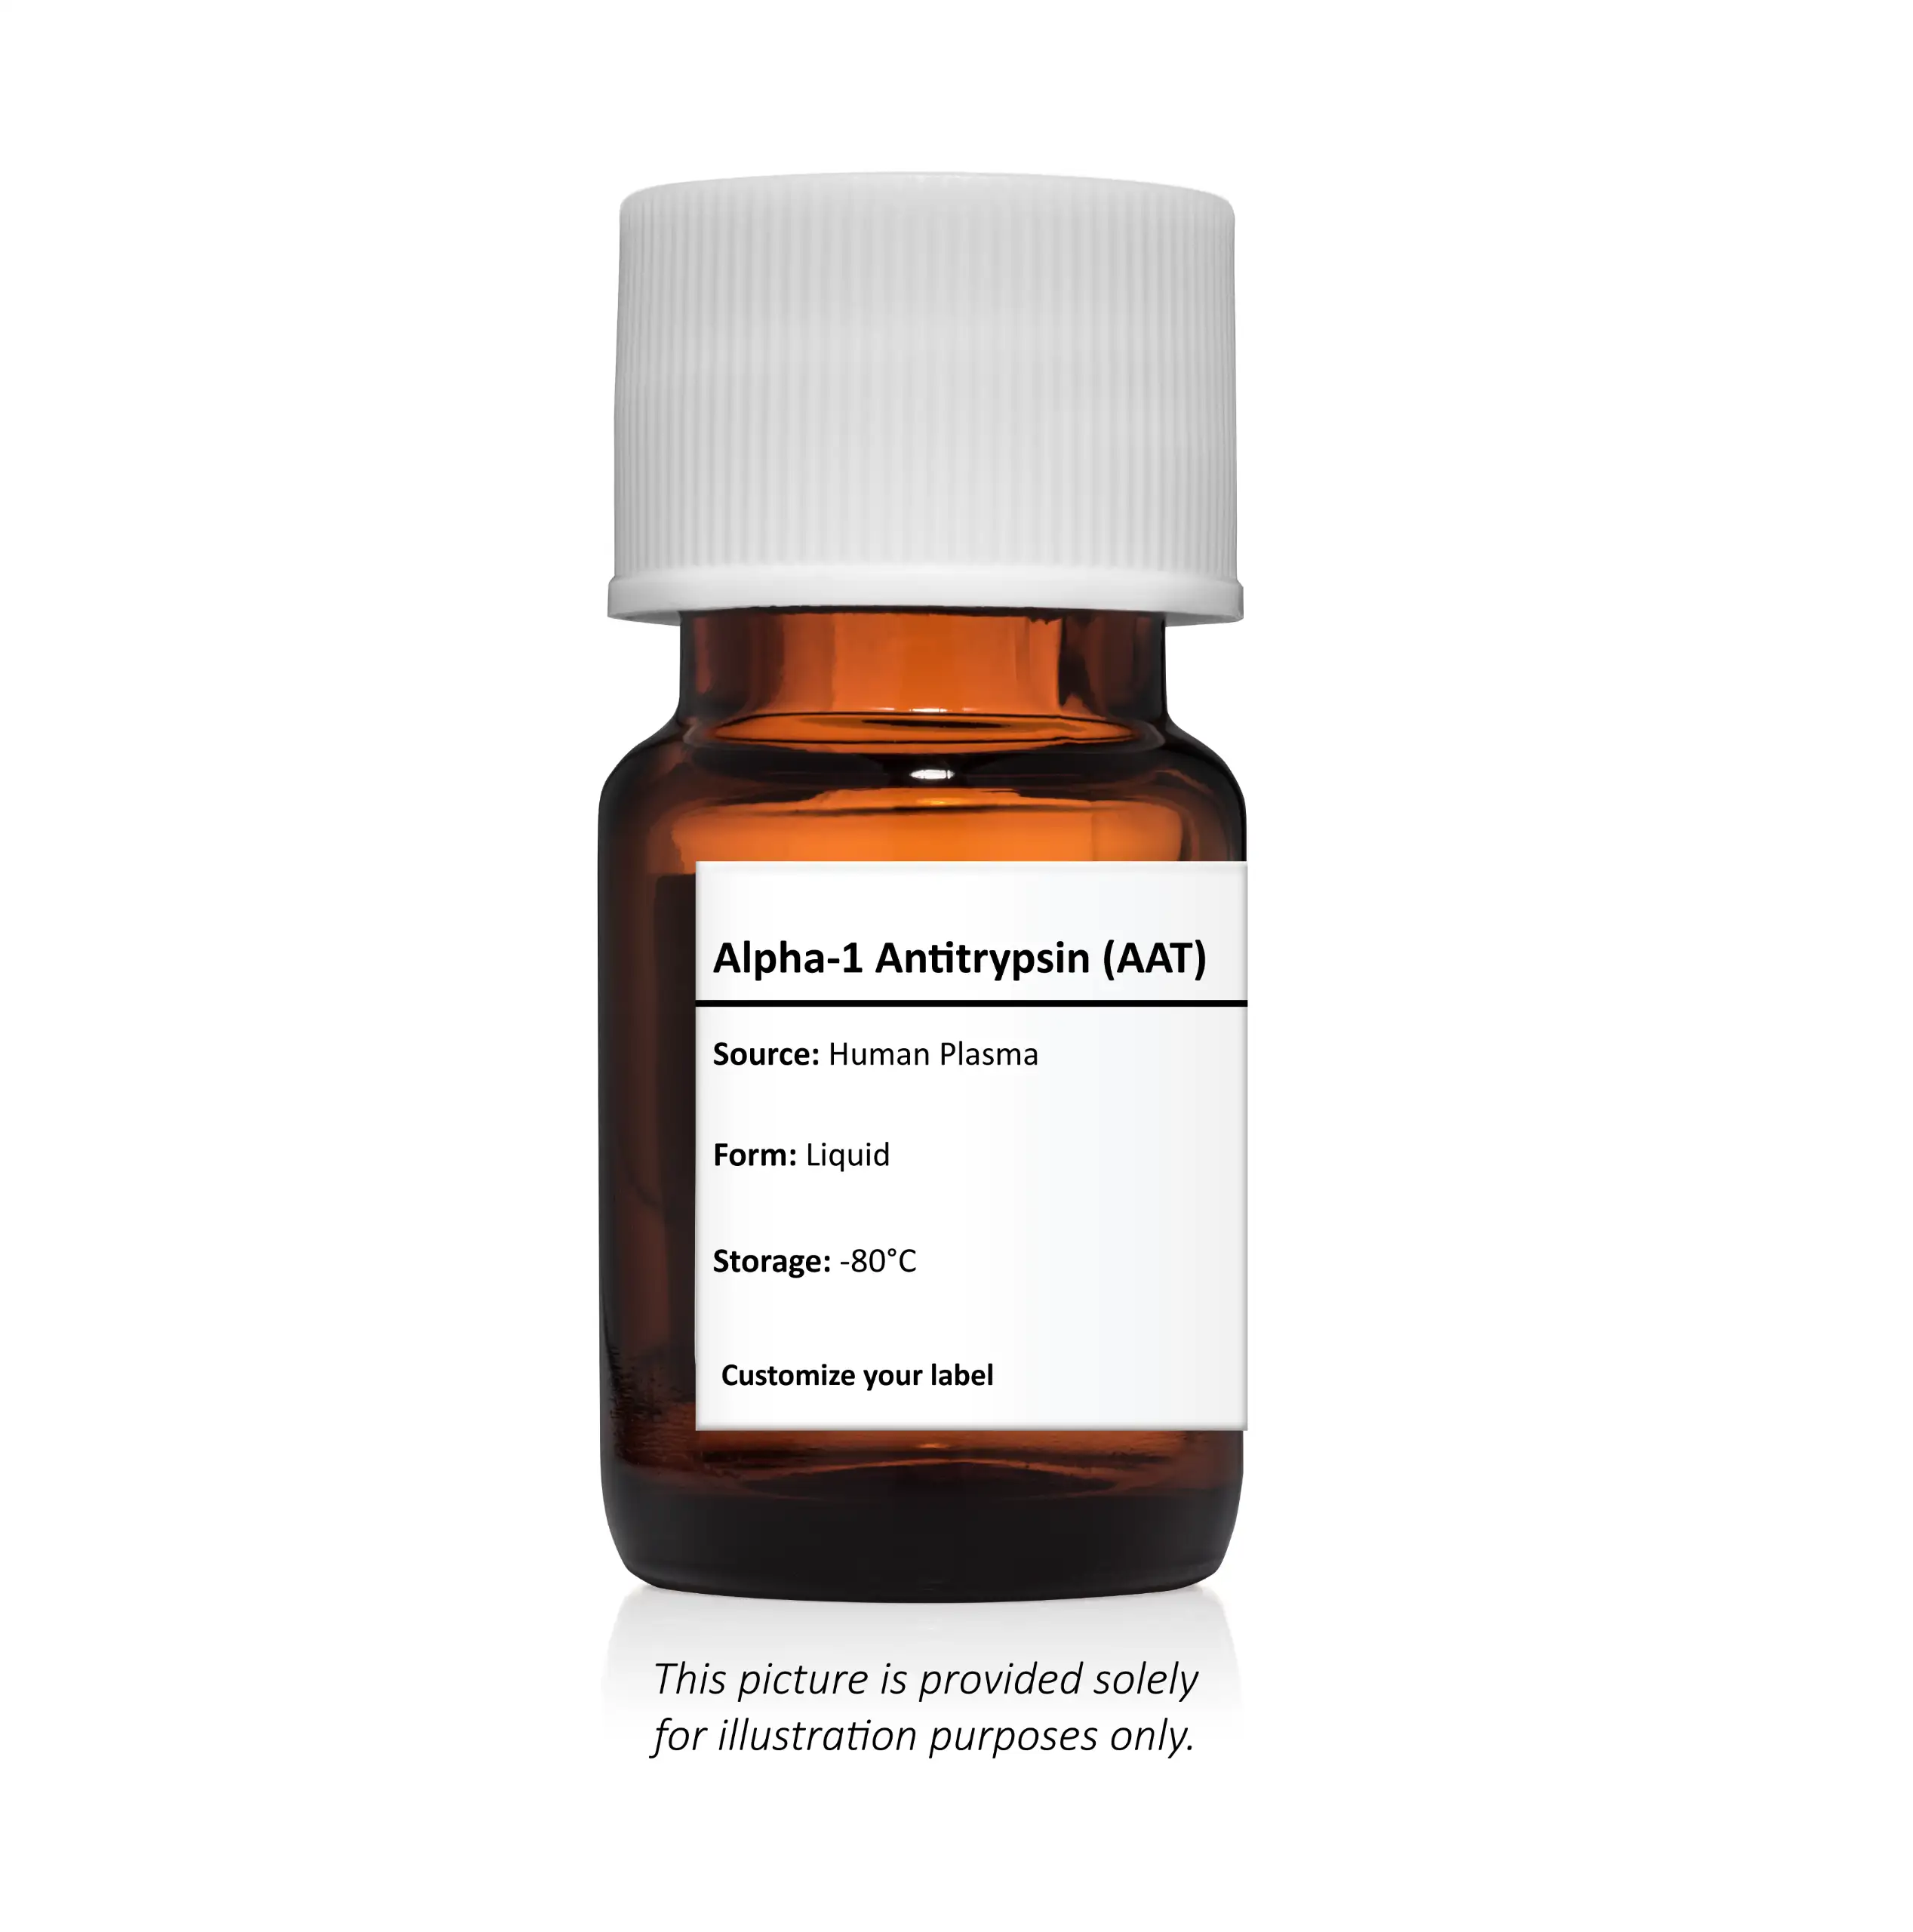 Alpha-1 Antitrypsin (AAT)